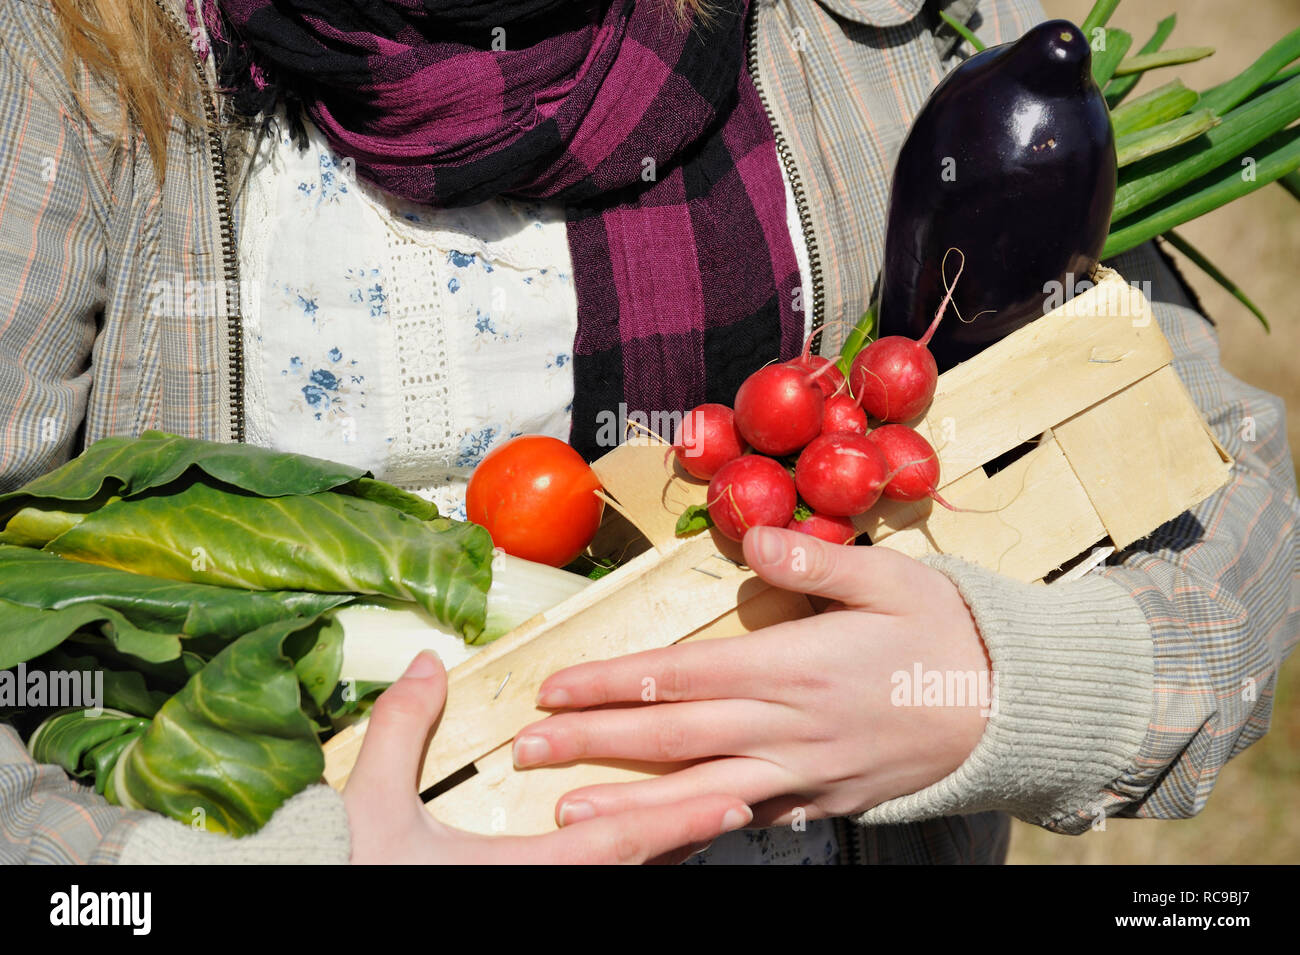 Junge Frau mit im Gemüsekorb Arm - junges Gemüse | Les jeunes femmes avec le panier de légumes Banque D'Images